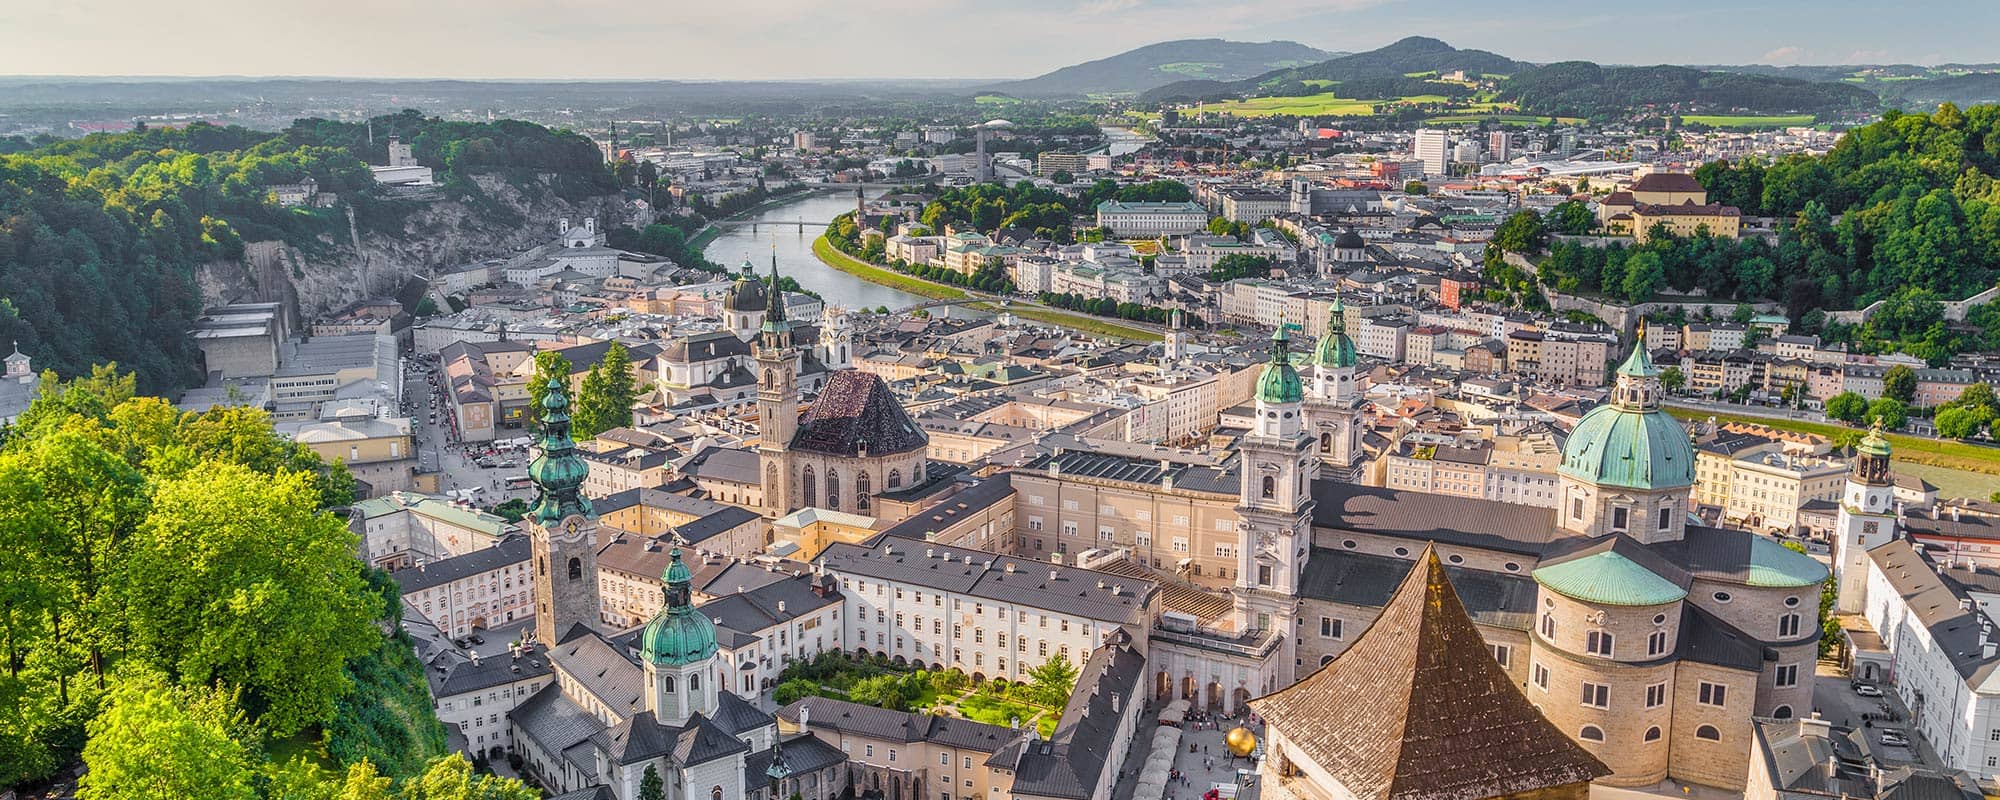 Immobilien in Salzburg mieten oder kaufen